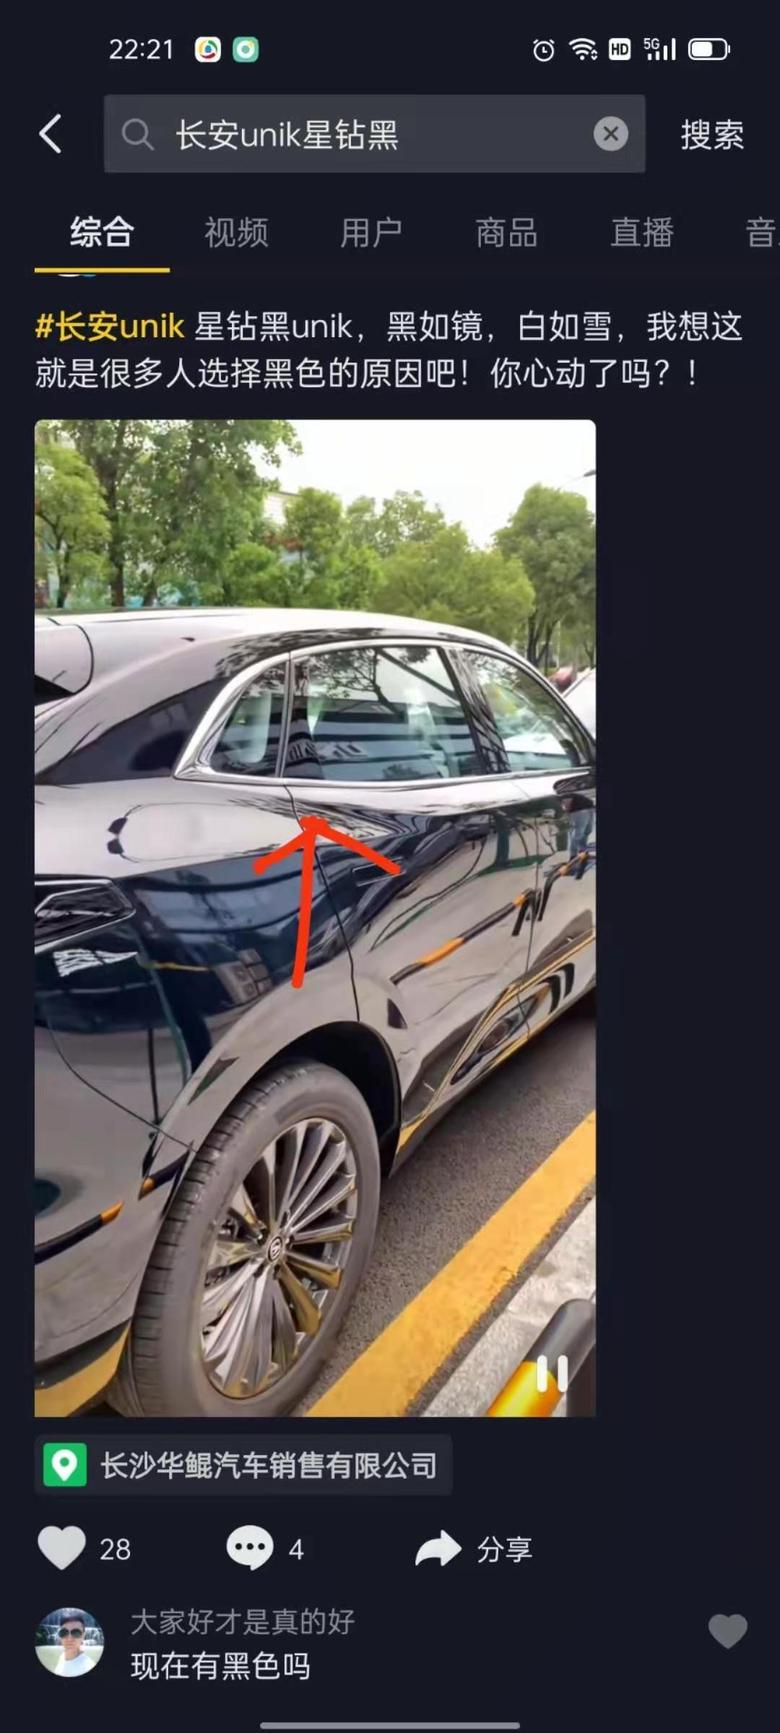 长安uni k-星钻黑的unik，有的车窗有银色边框，有的没有银色边框，各位车友知道是怎么回事吗？